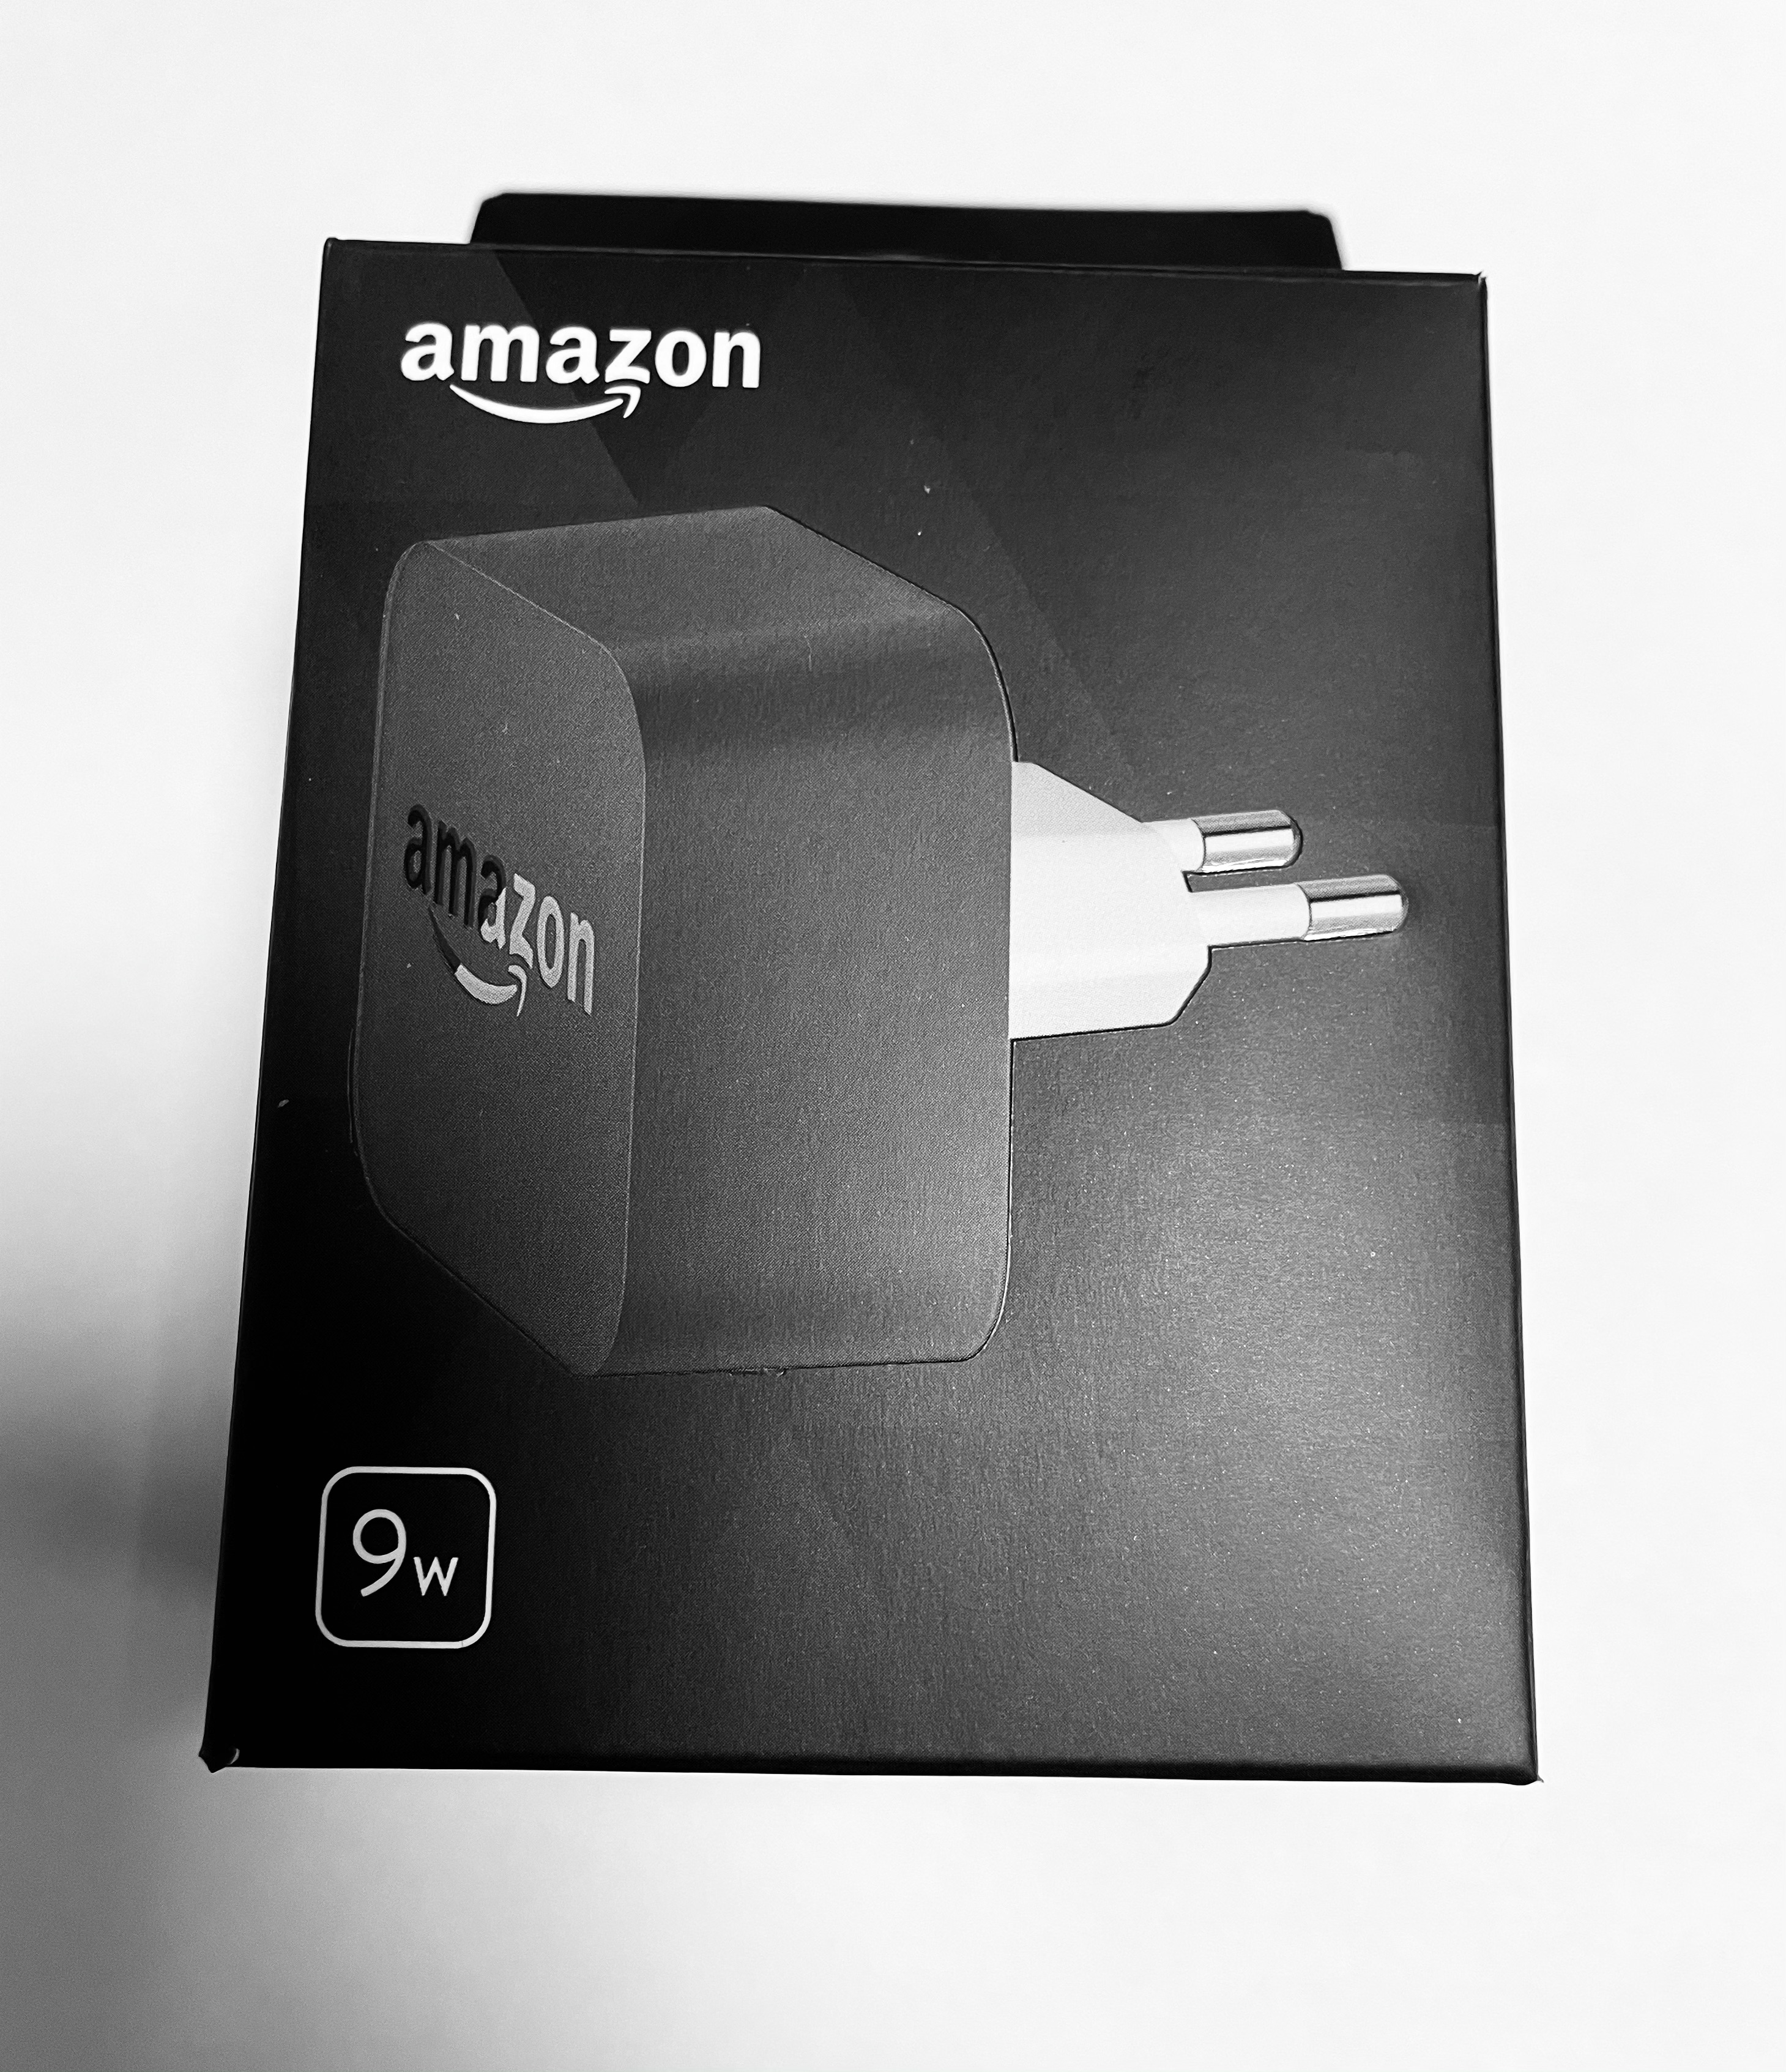 Amazon  USB сетевой адаптер  Евровилка 9w